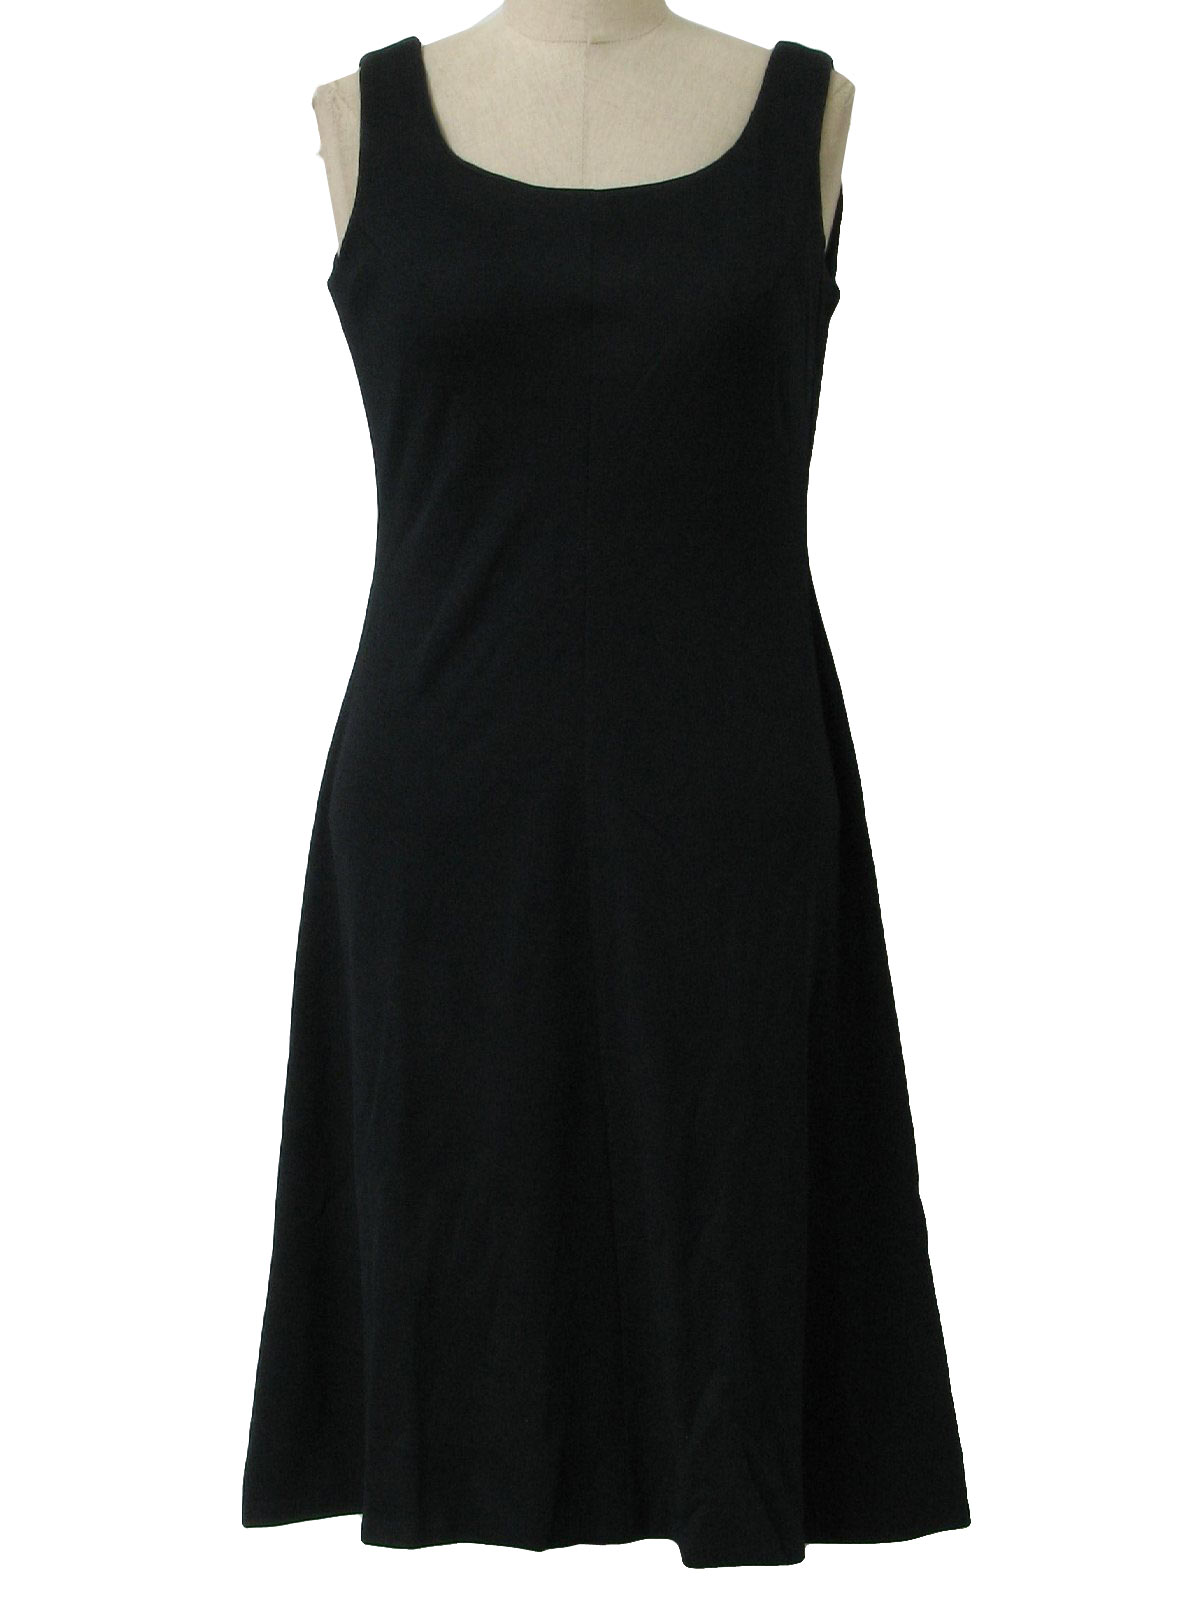 1970 s sears knit little black dress 70s sears womens black sleeveless ...